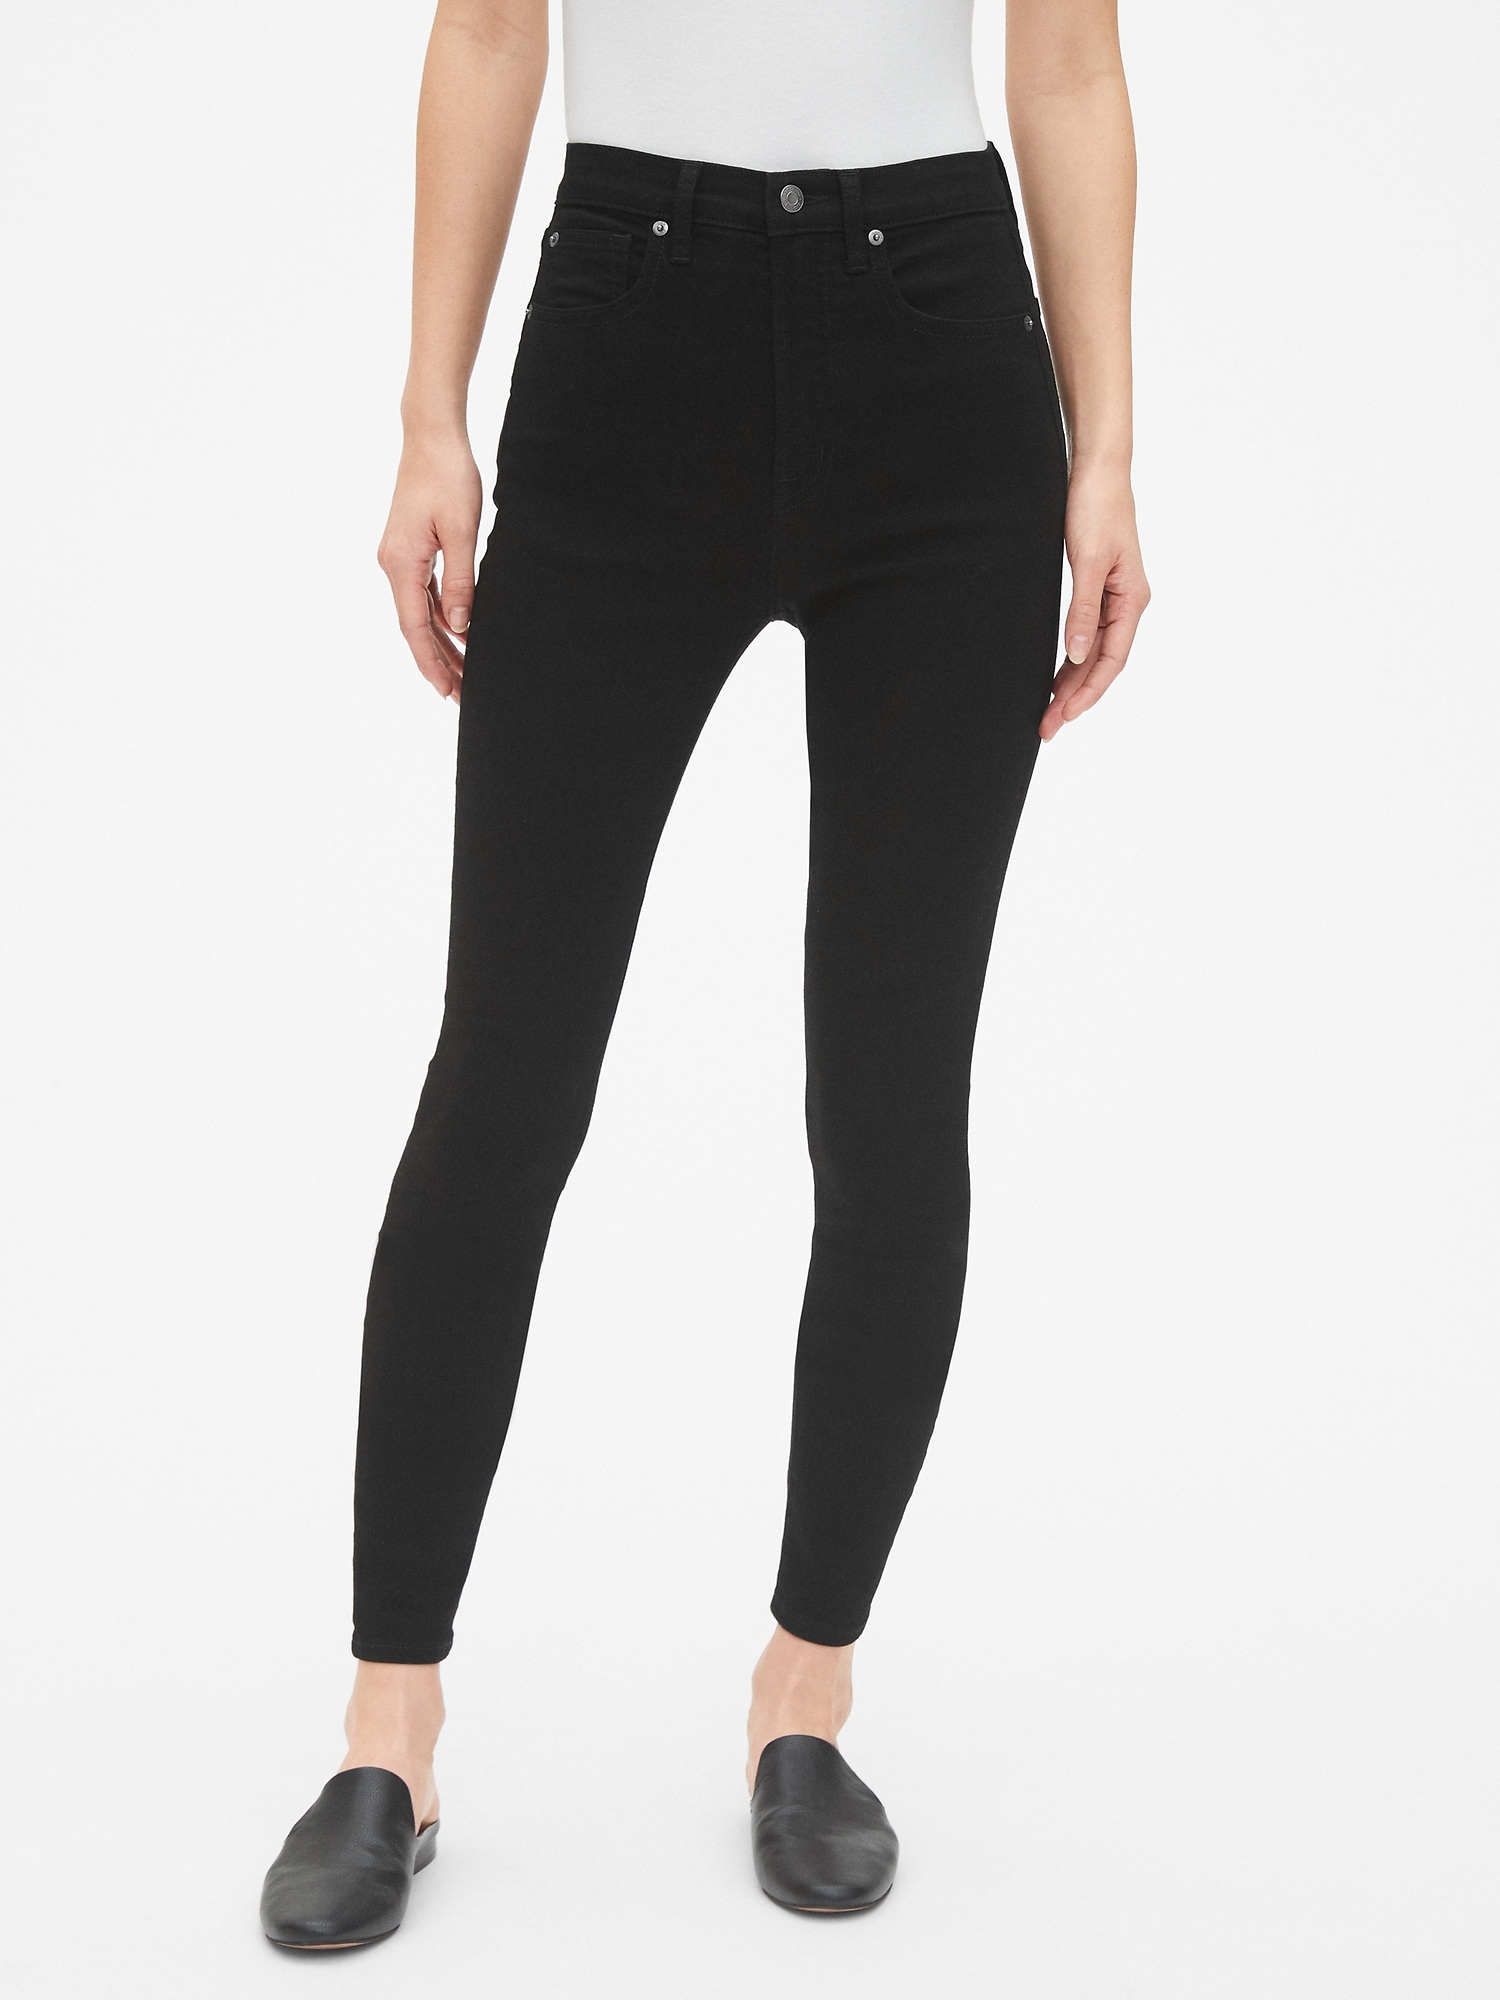 Girls Black Skinny Jeans Wholesale, Save 40% | jlcatj.gob.mx